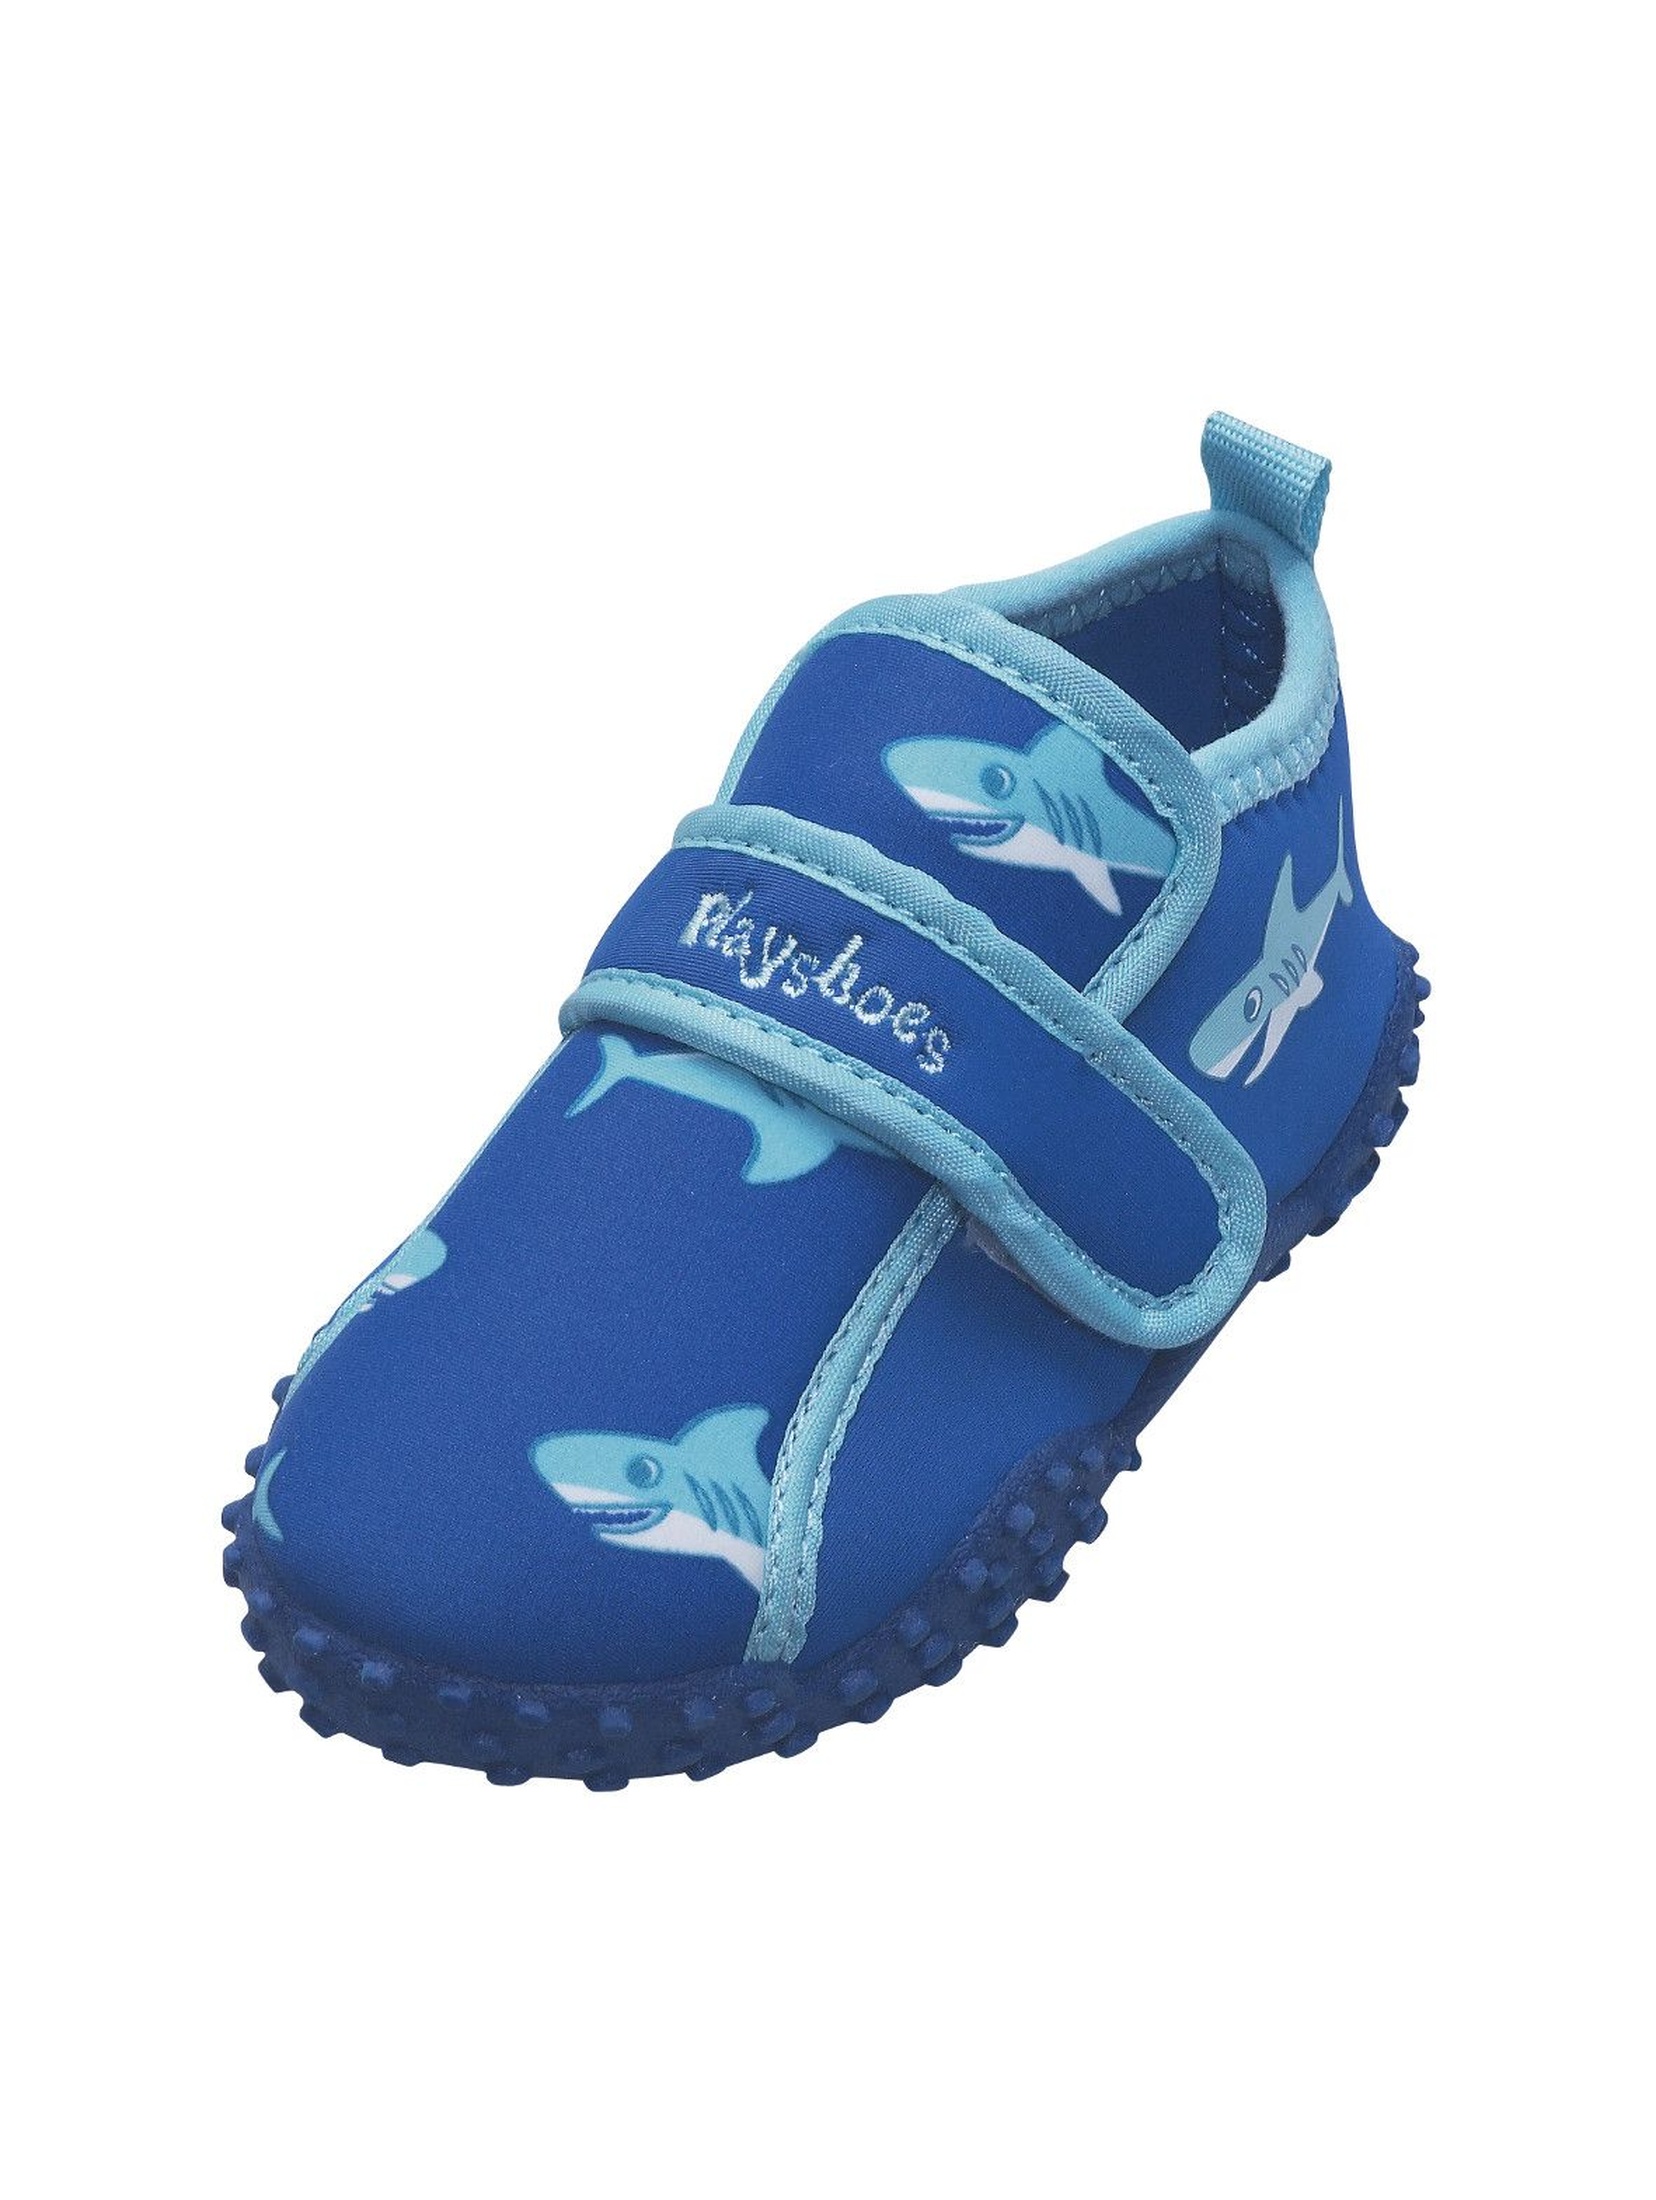 Buty kąpielowe z filtrem UV- niebieskie w rekiny